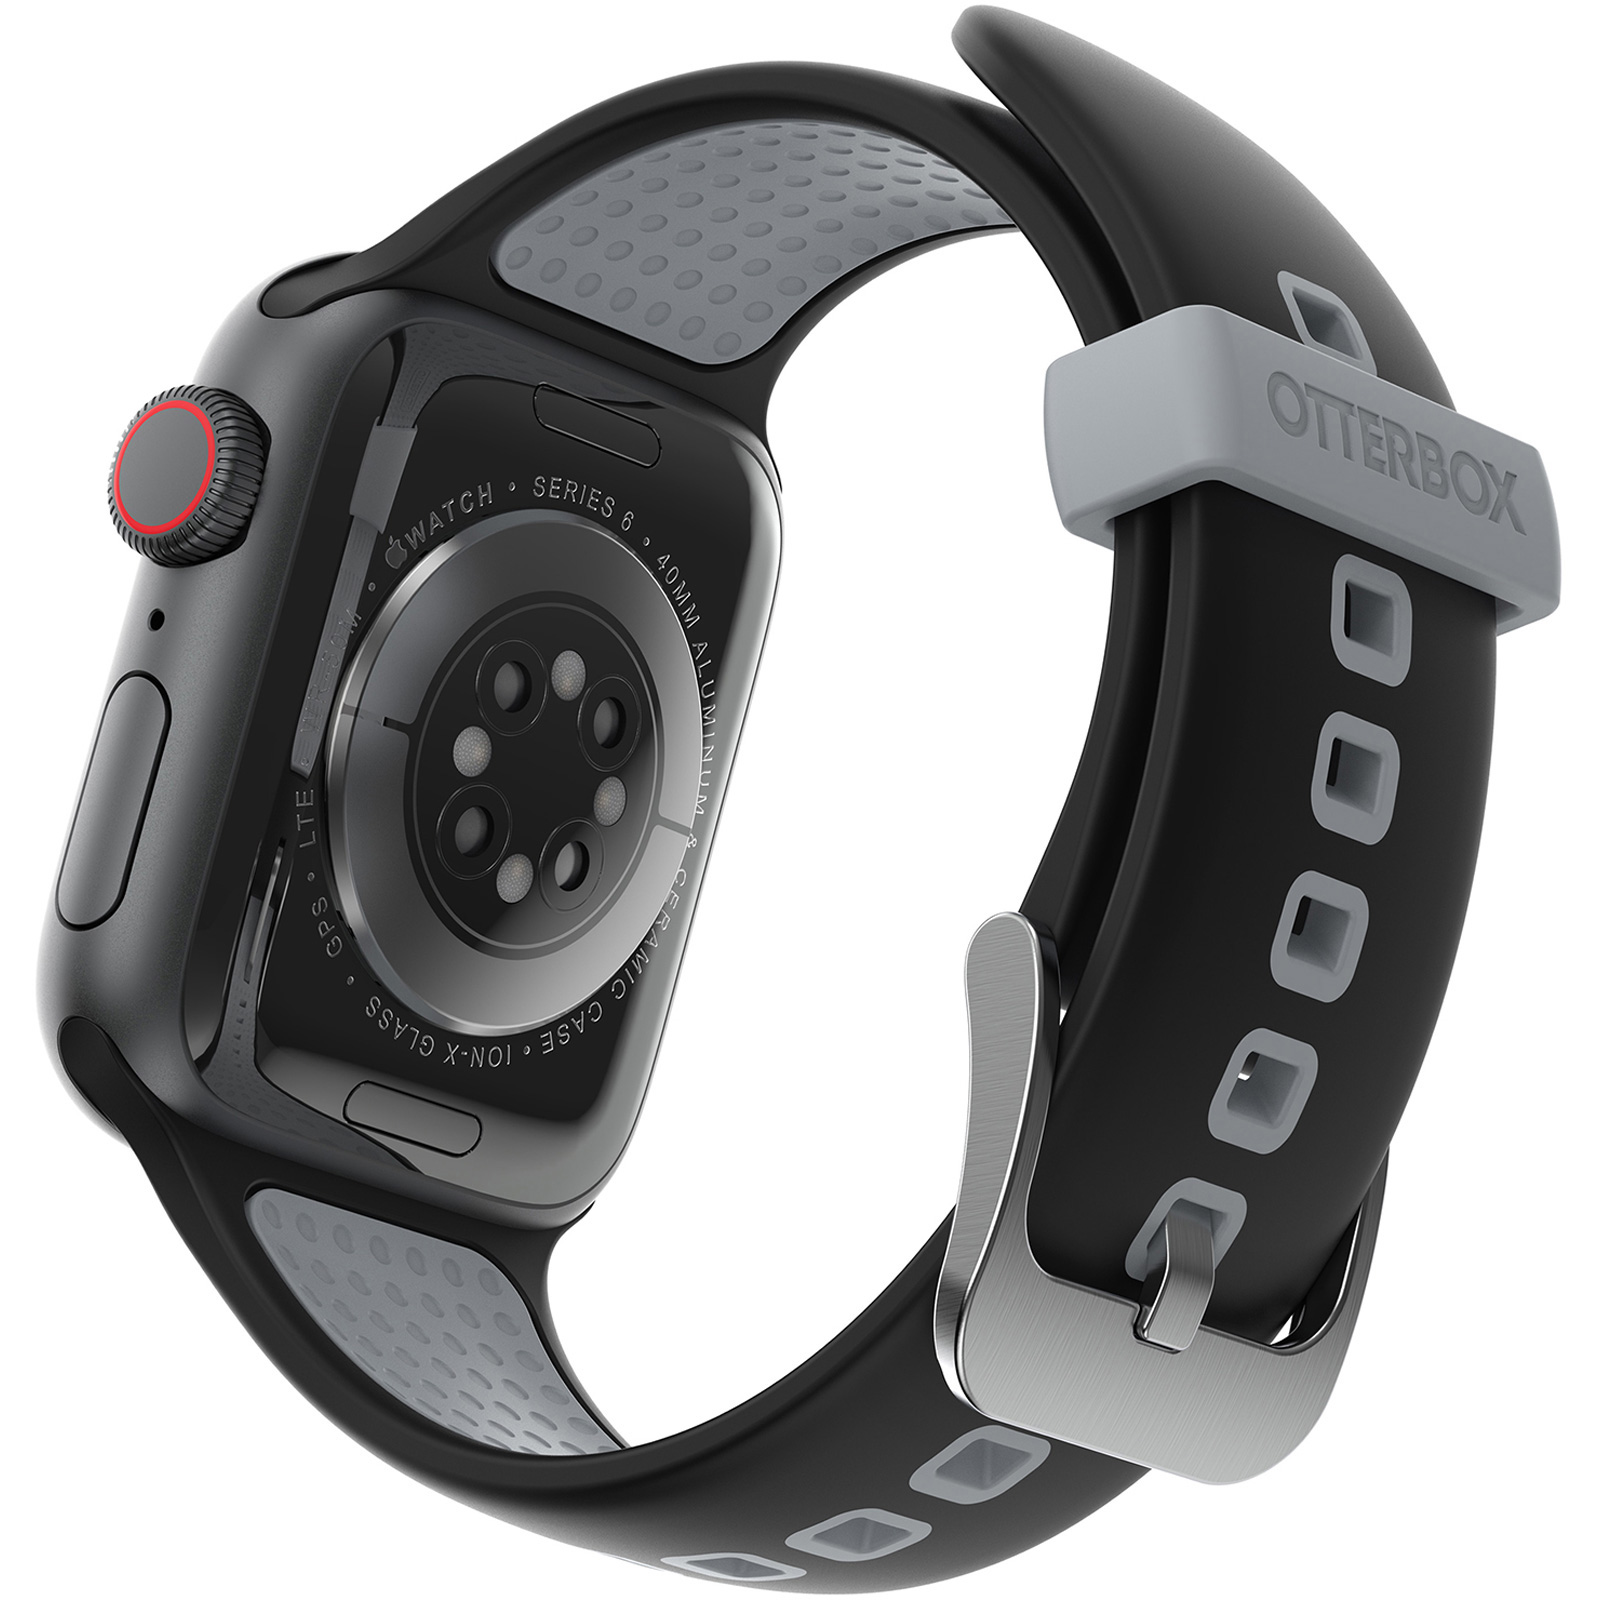 Band für die Apple Watch| OtterBox den für Apple Watch ganzen Band (42/44mm) für Tag die